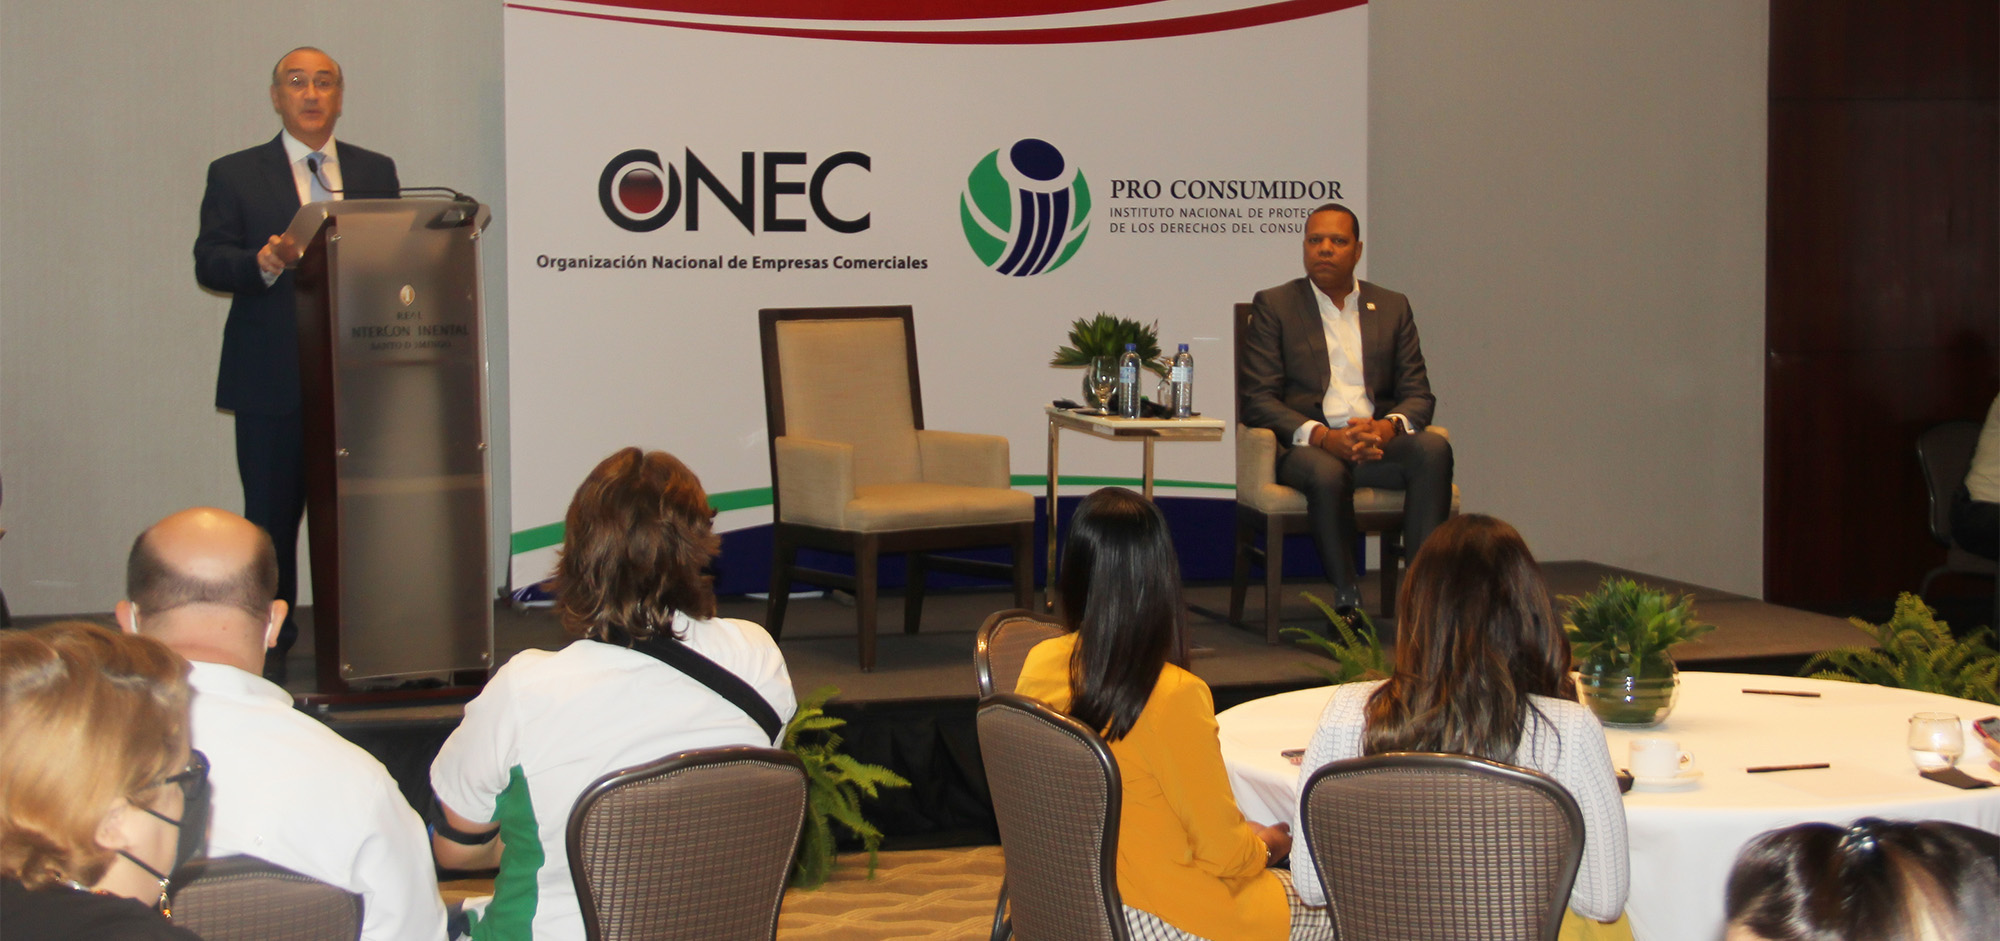 El presidente de la Organización Nacional de Empresas Comerciales (ONEC), Mario Lama Haché, habla en el encuentro. A su lado, el director ejecutivo de Pro Consumidor, doctor Eddy Alcántara.